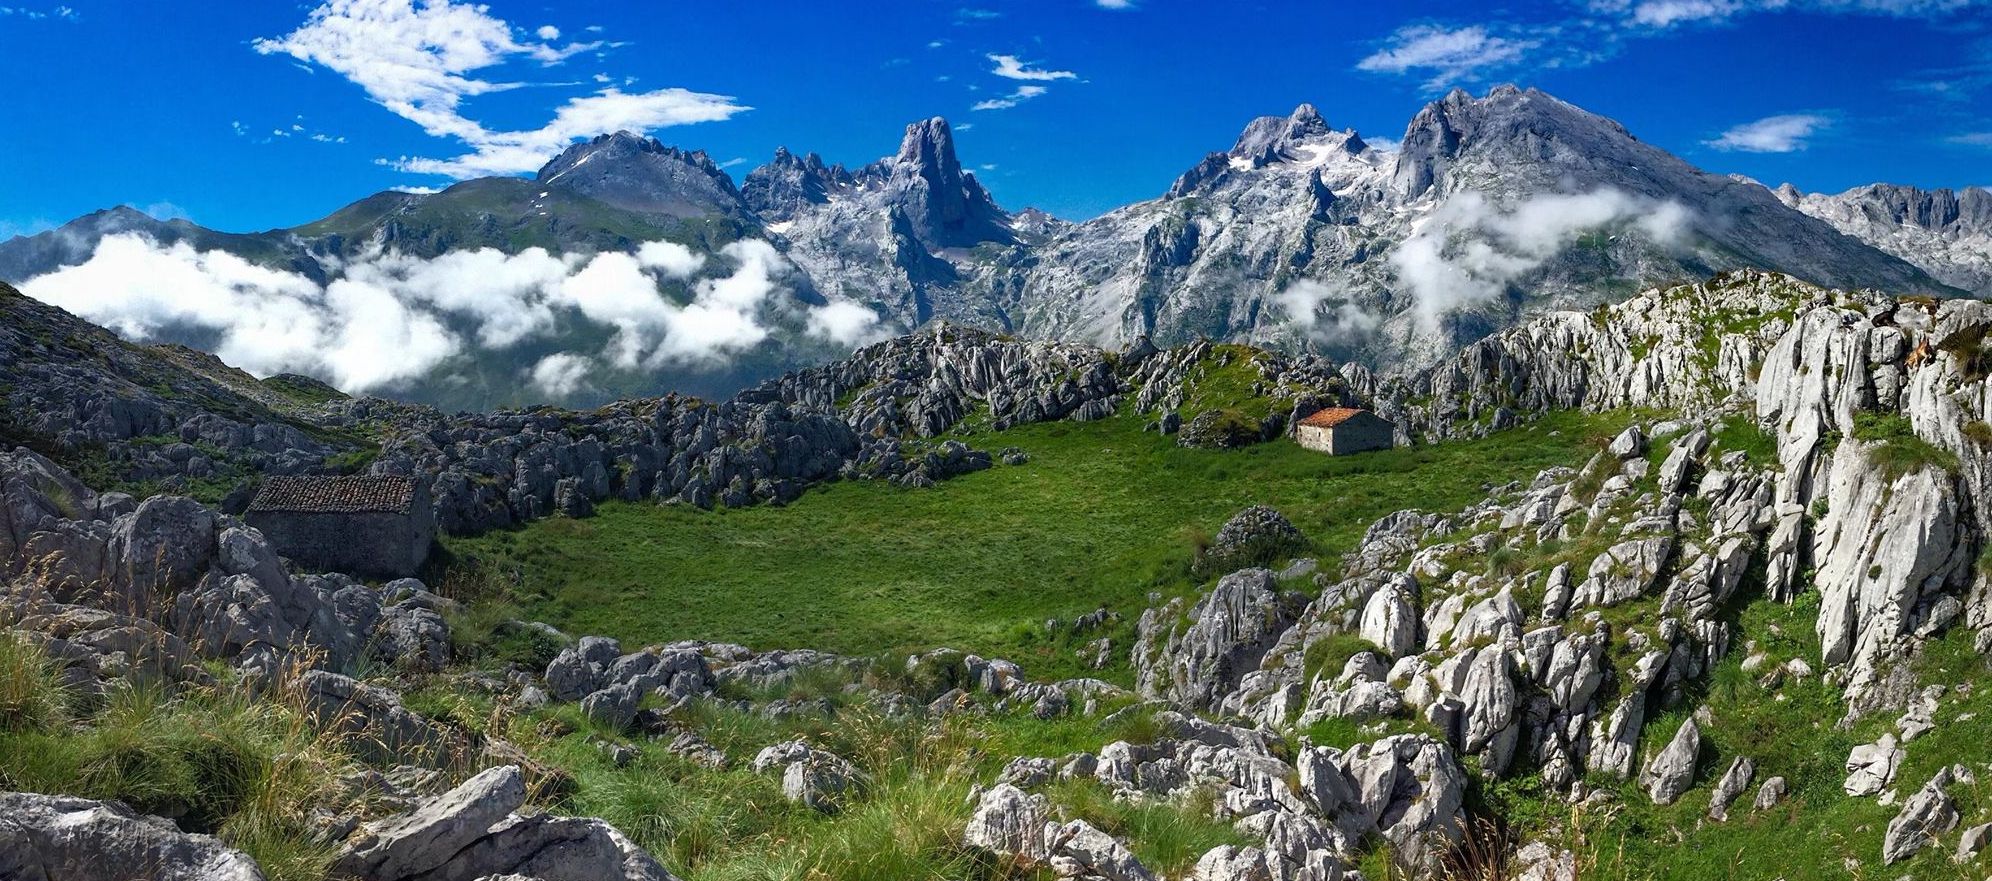 High alpine meadows on approach to Naranjo de Bulnes in the Picos de Europa